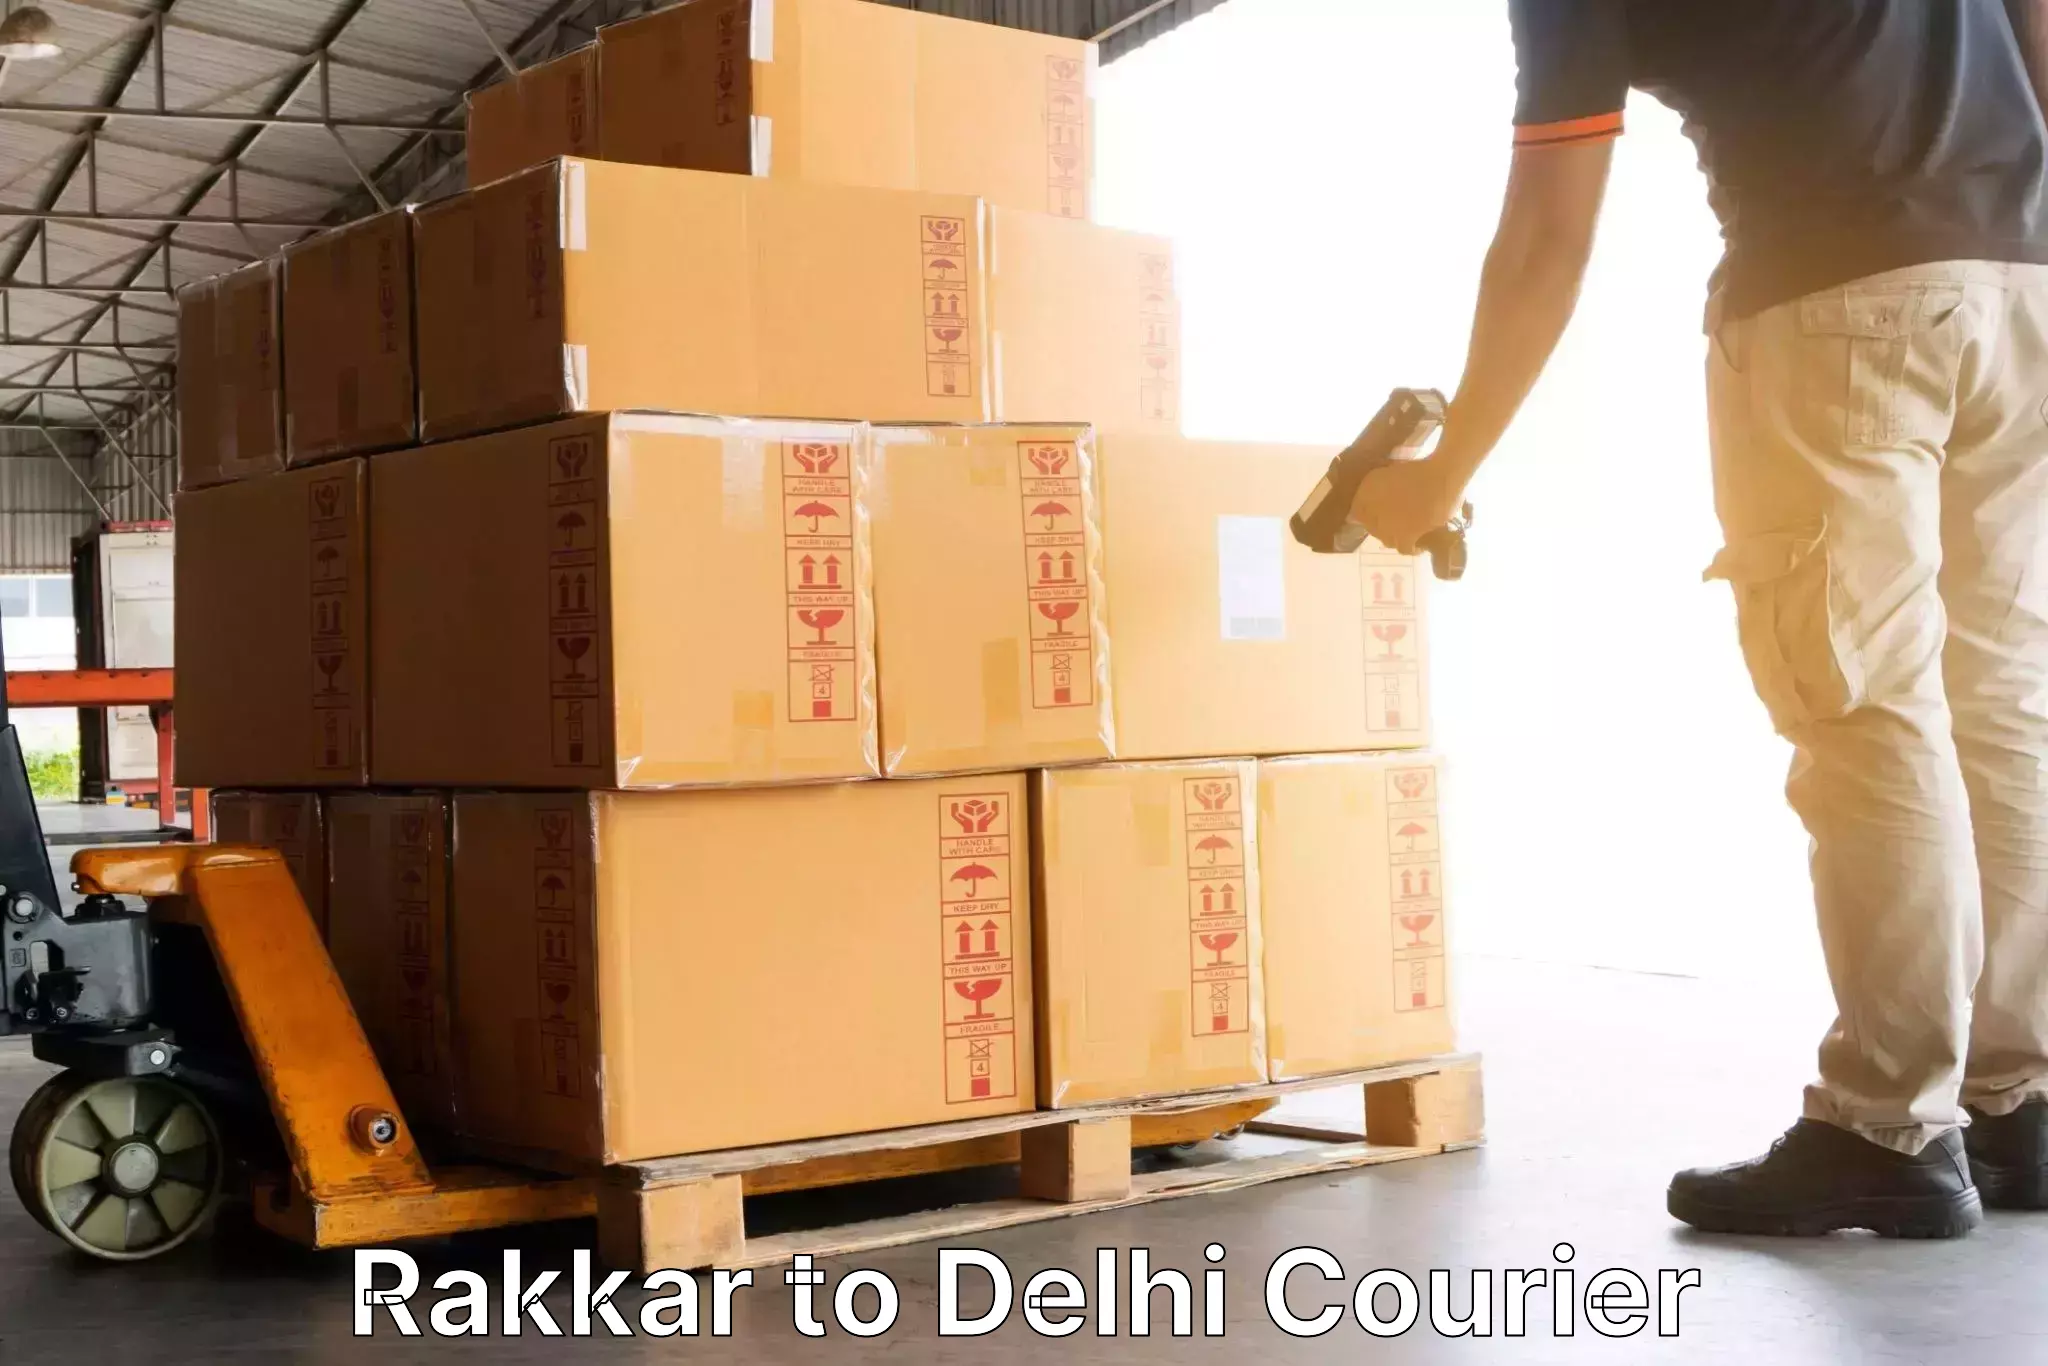 24/7 shipping services Rakkar to Jamia Millia Islamia New Delhi